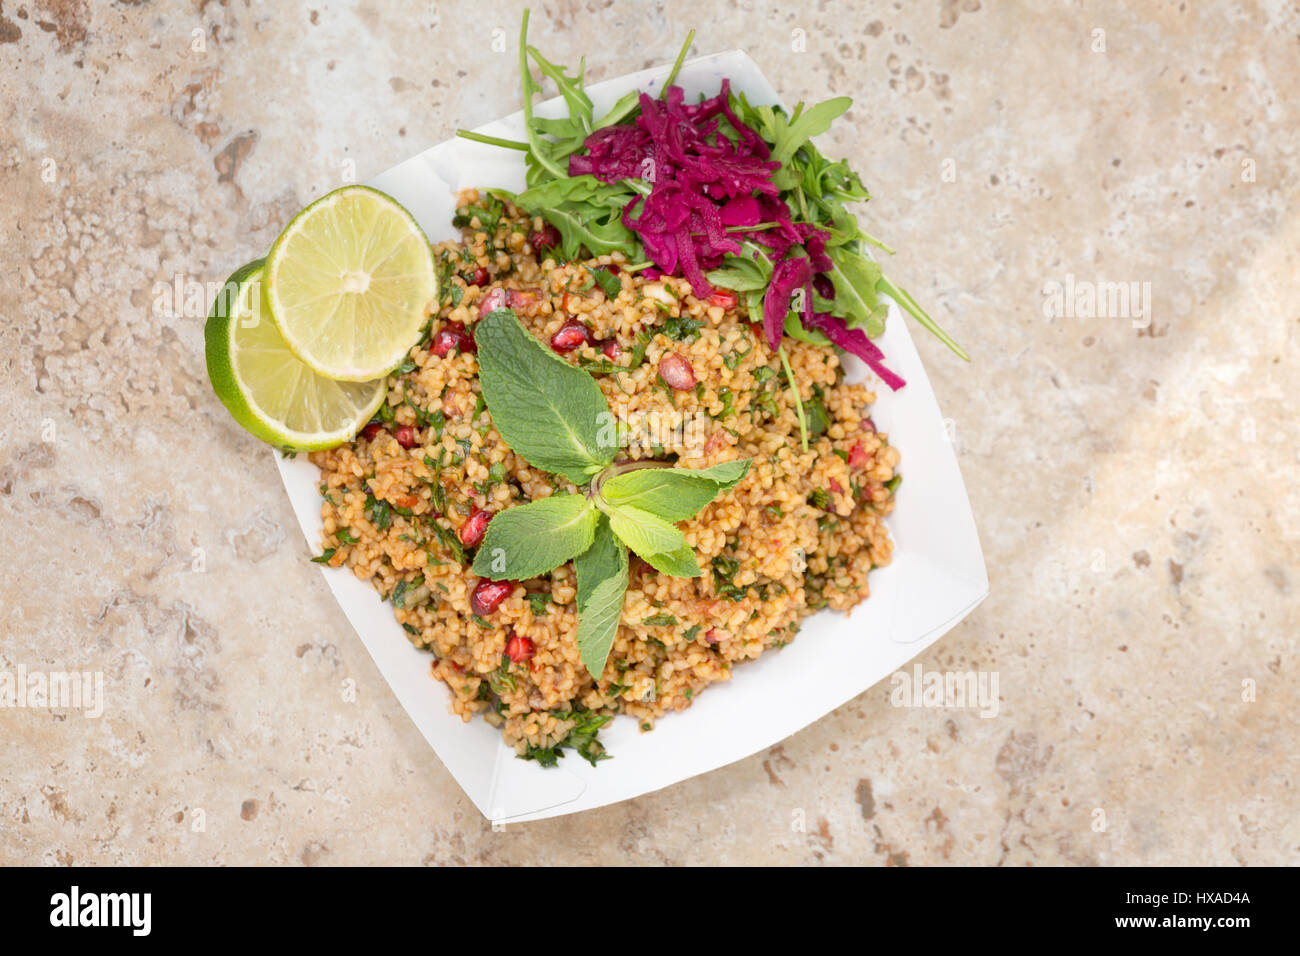 Orientalische Speisen - vegetarisches Essen bestehend aus Bulgur-Weizen-Salat, Raketen, Sauerkraut Limetten und Minze - Konzept - gesunde Ernährung Stockfoto